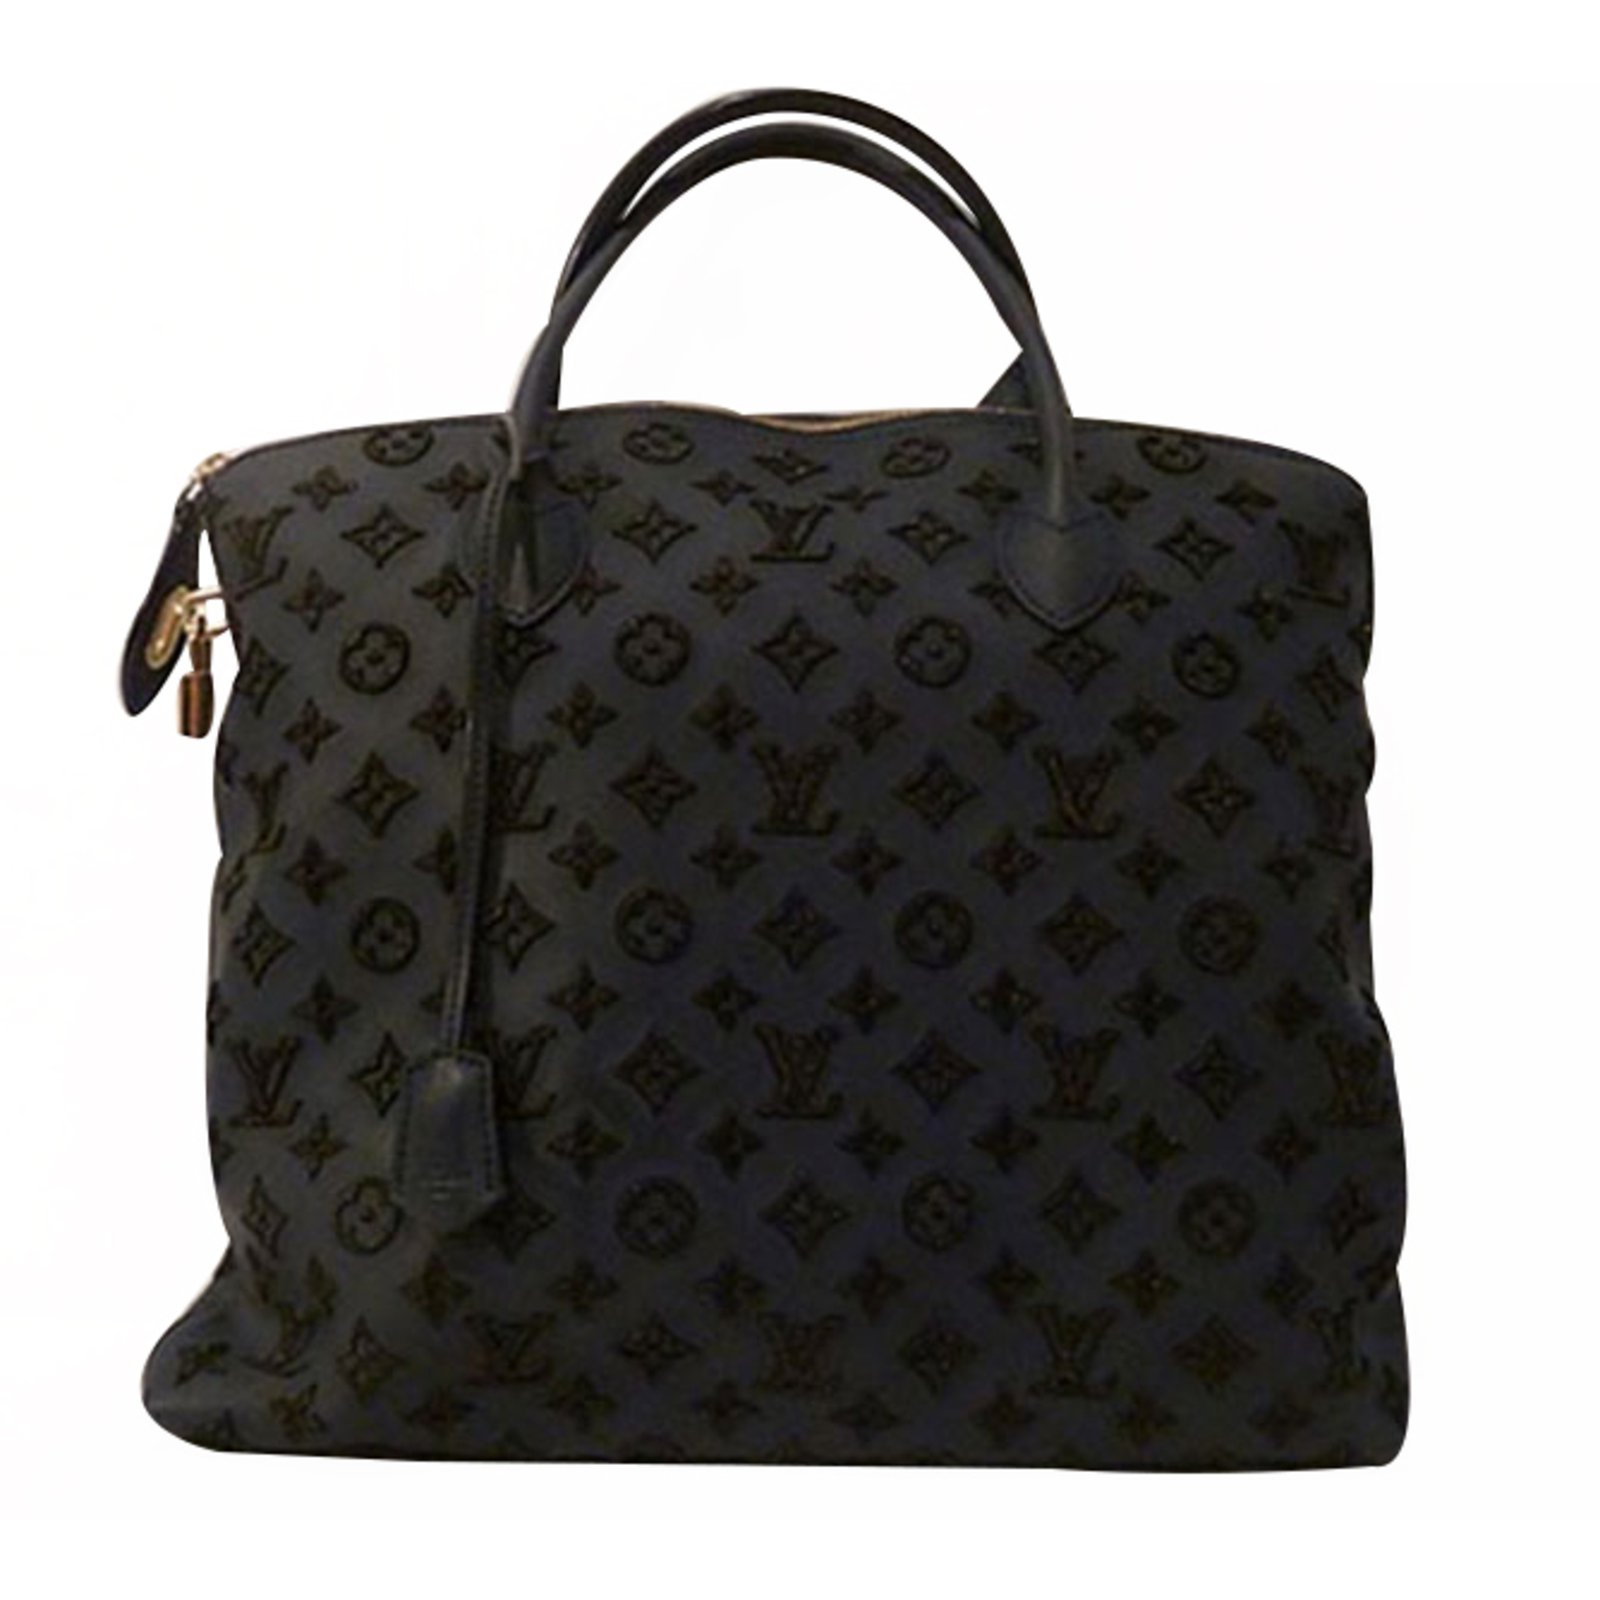 Louis Vuitton 2007 Lockit Tote Bag